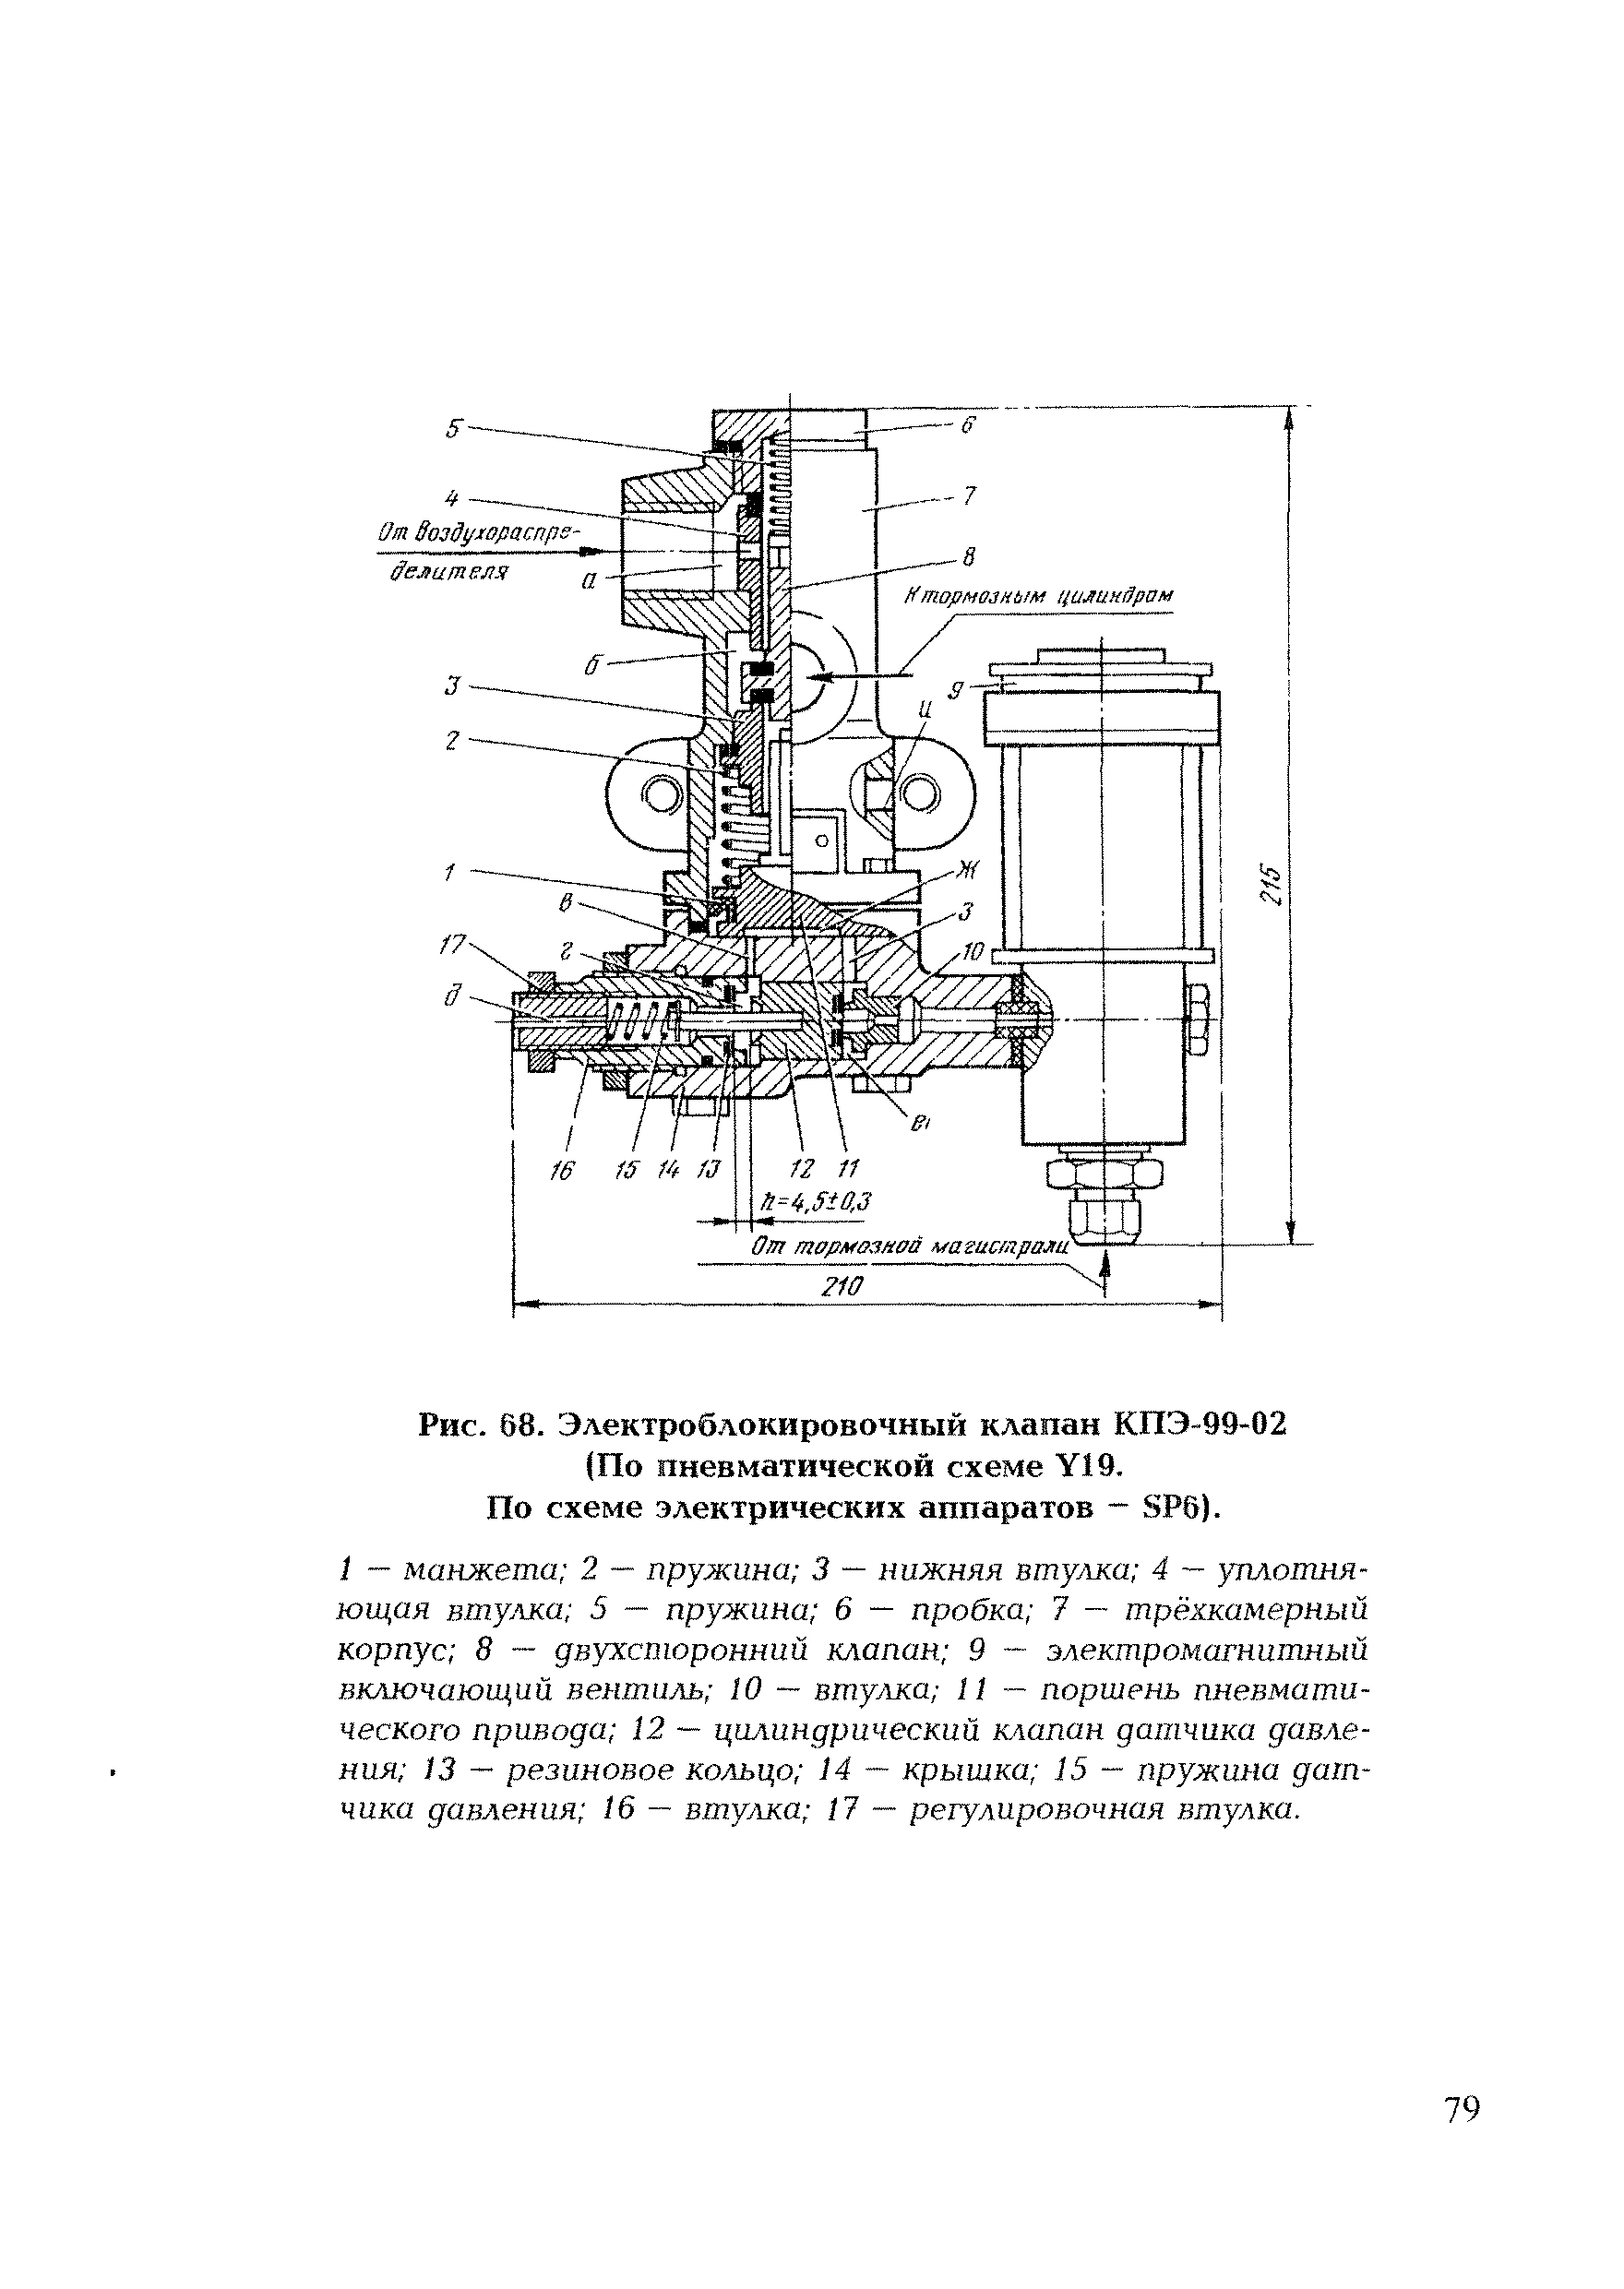 Рис. 8. Электроблокировочный клапан КПЭ-99-02 (По пневматической схеме VI9.
